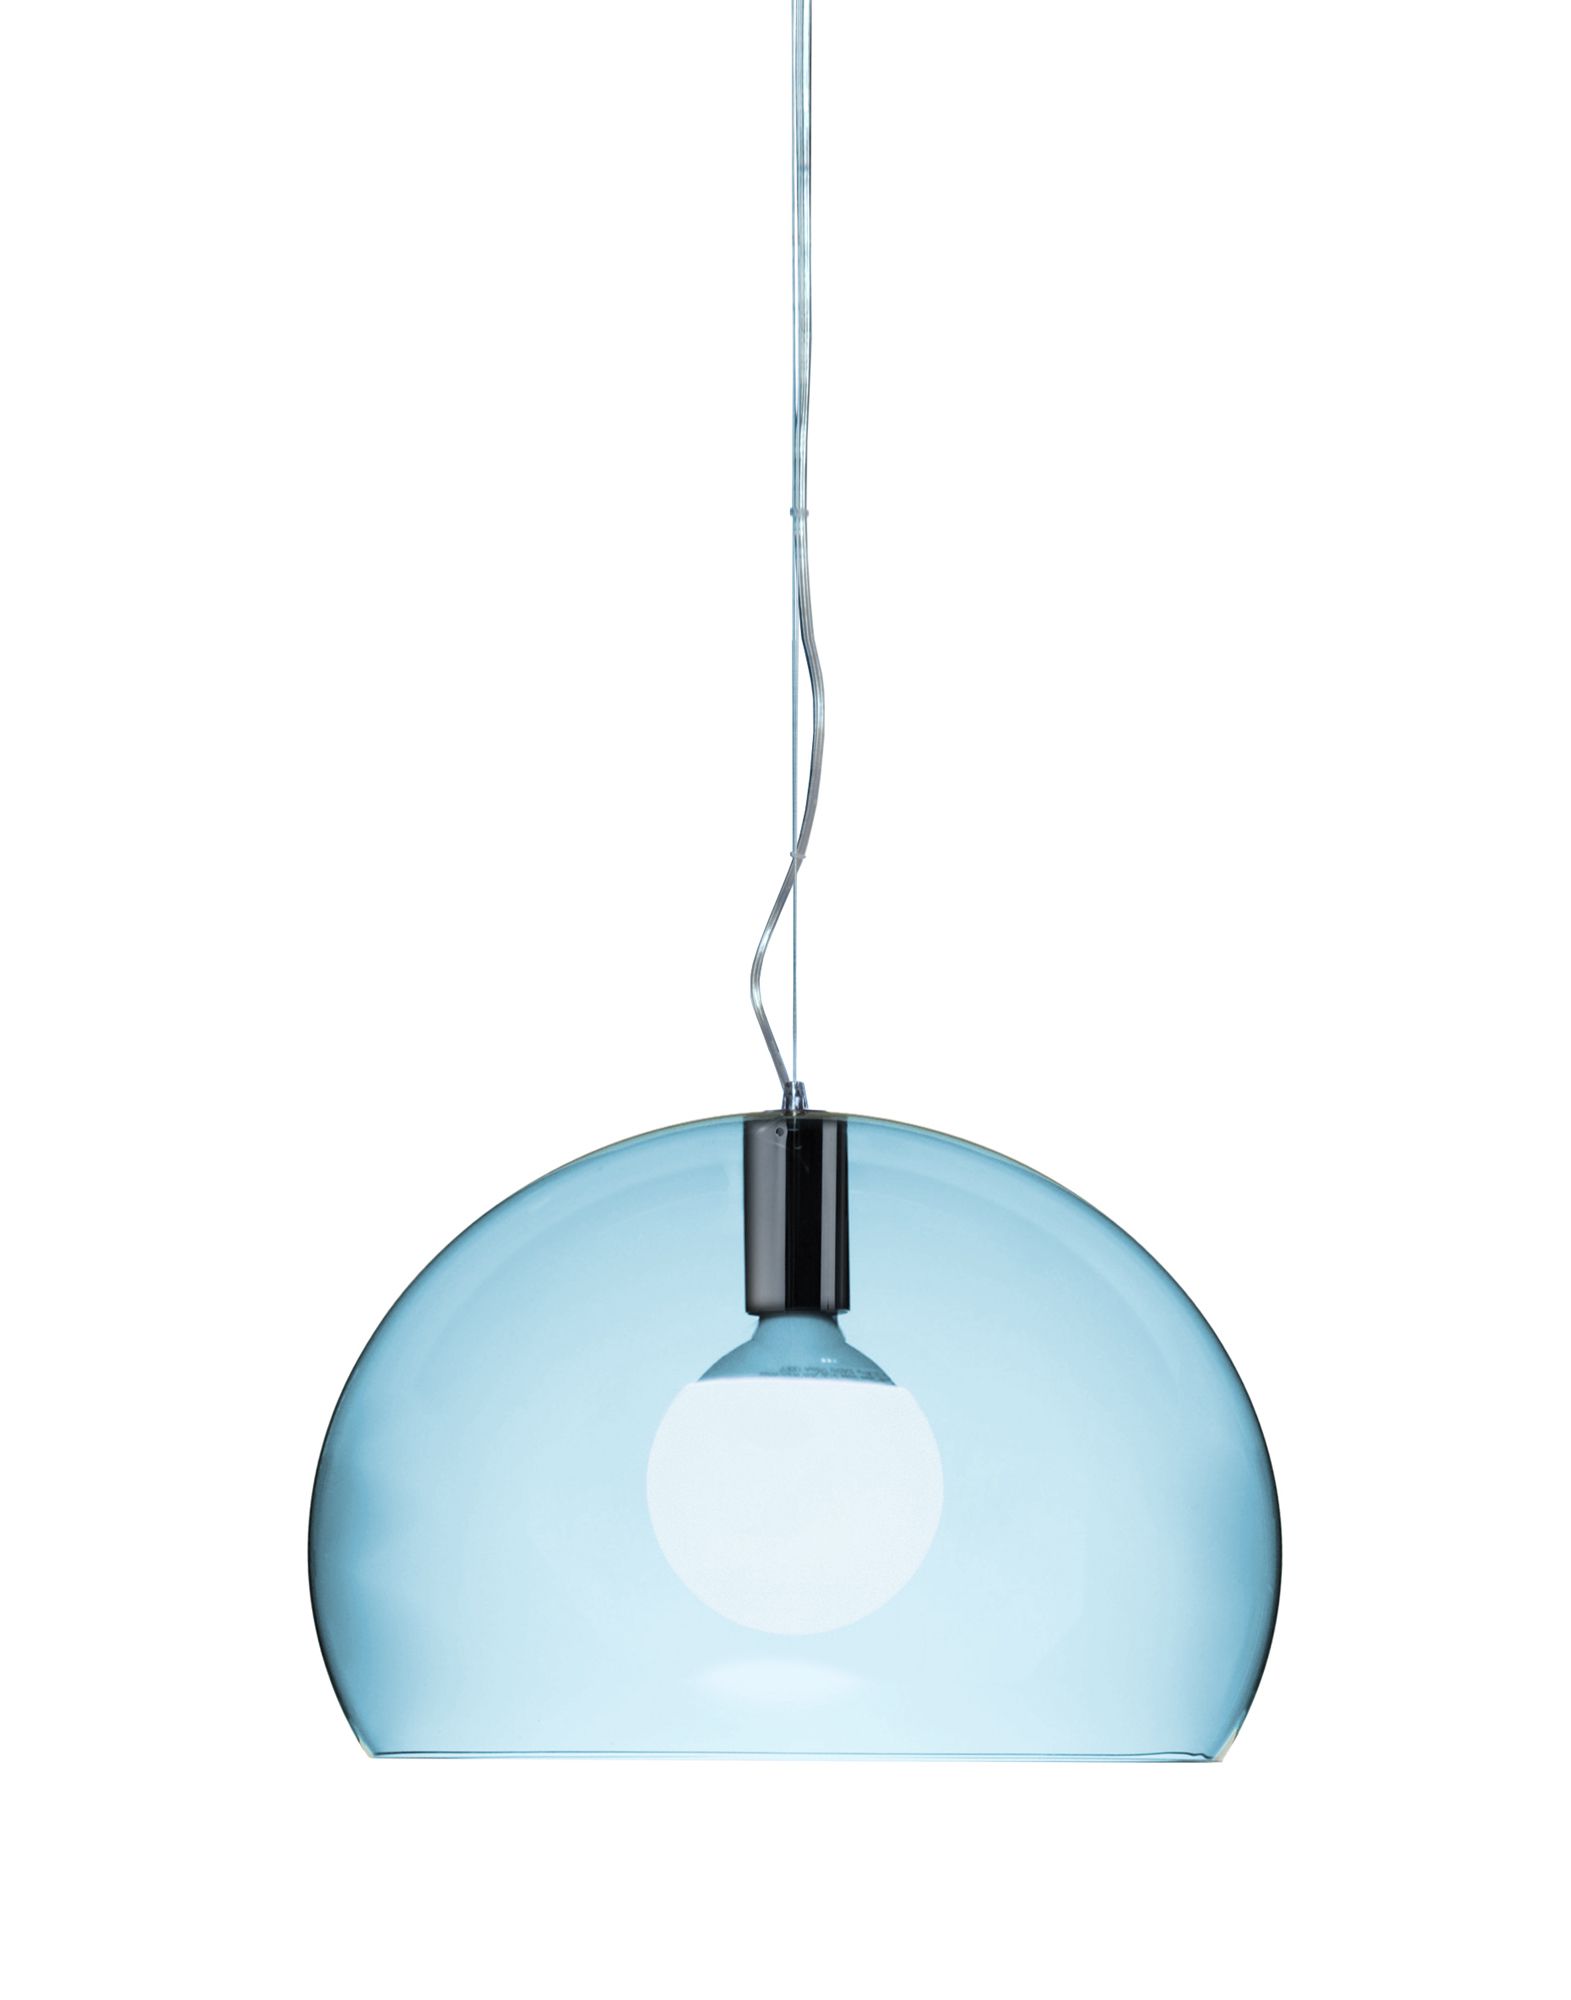 Suspensie Kartell FL/Y design Ferruccio Laviani E27 max 15W LED h28cm bleu transparent Kartell imagine reduss.ro 2022